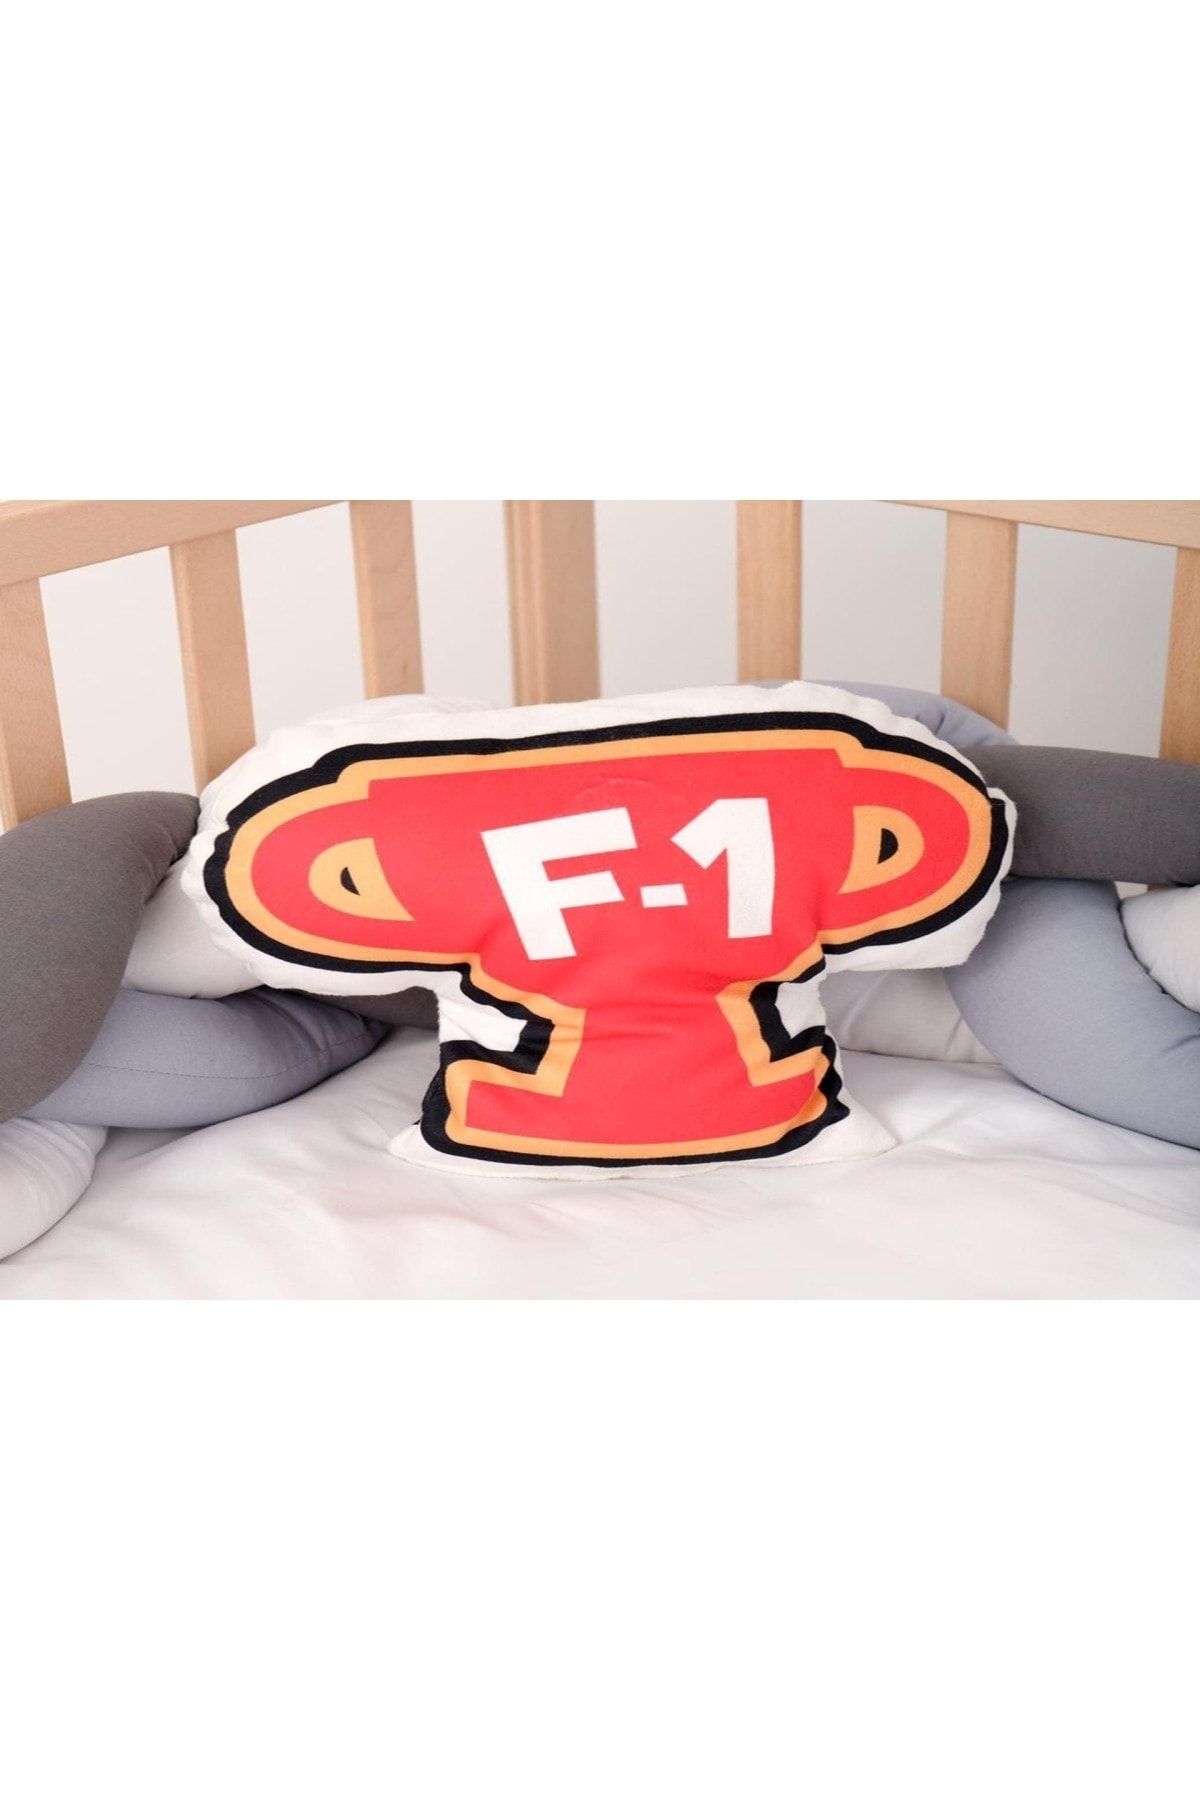 instababyrooms F-1 Kupa Desenli Uyku Arkadaşı Dijital Baskılı Dekoratif Yastık